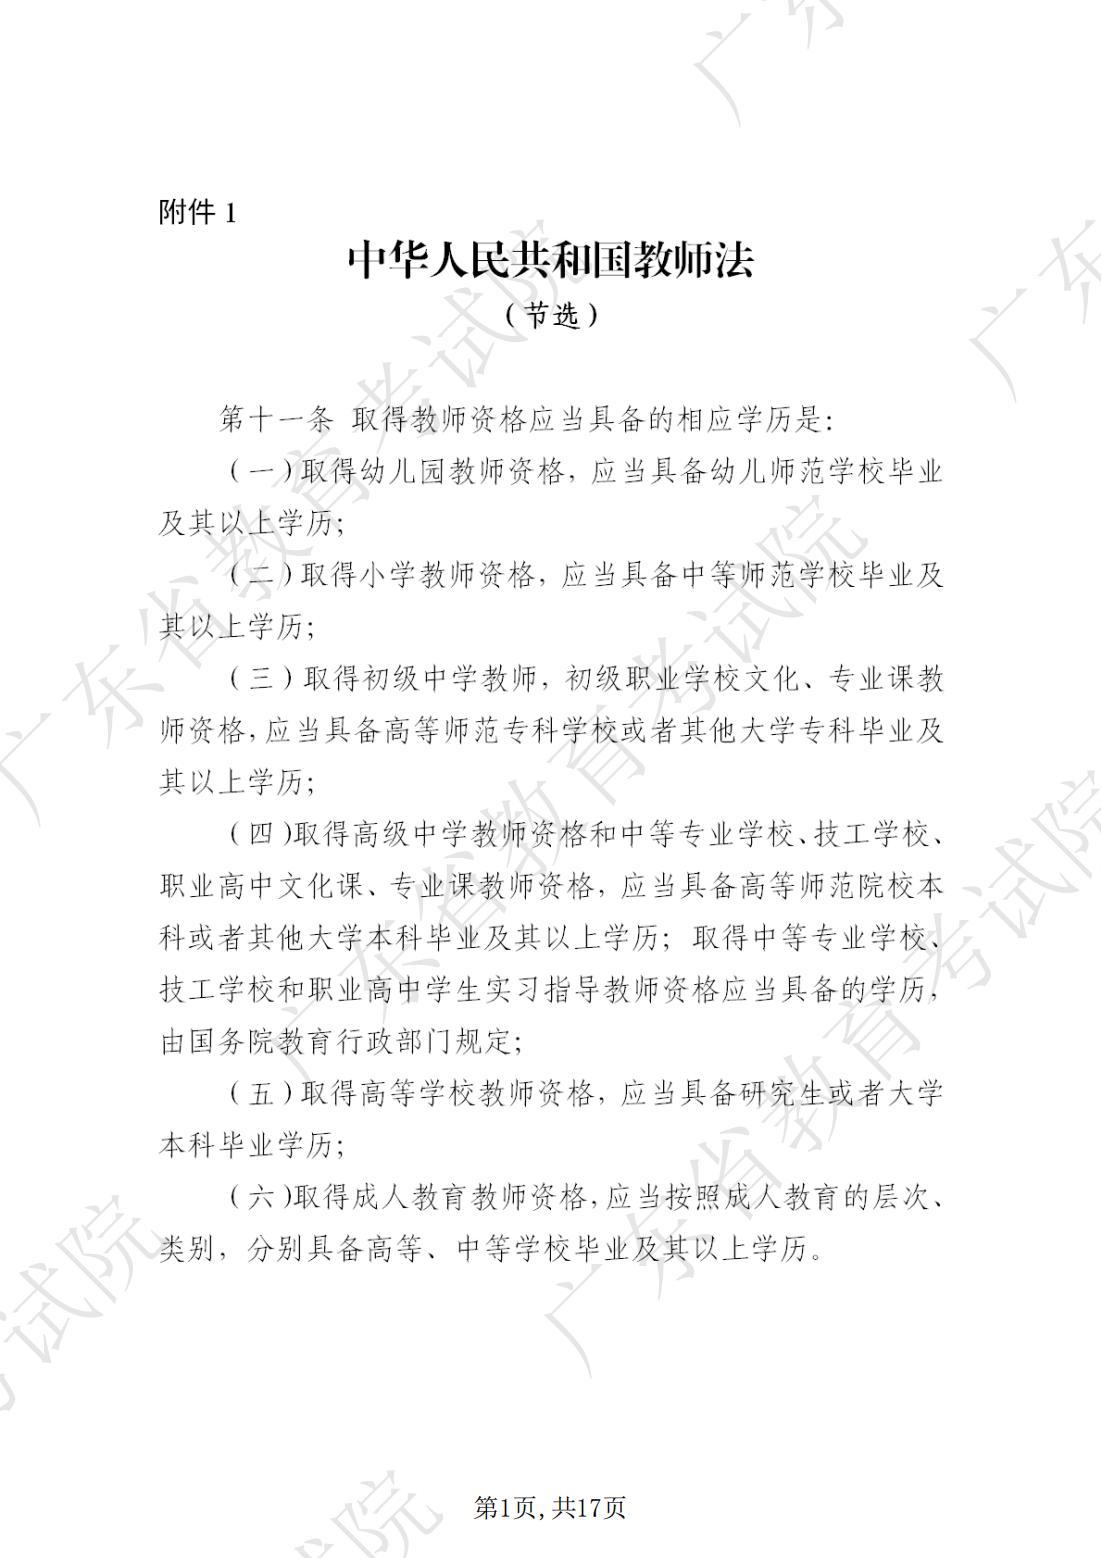 2022-08-18  关于发布《广东省2022年下半年中小学教师资格考试笔试通告》的请示_00.jpg